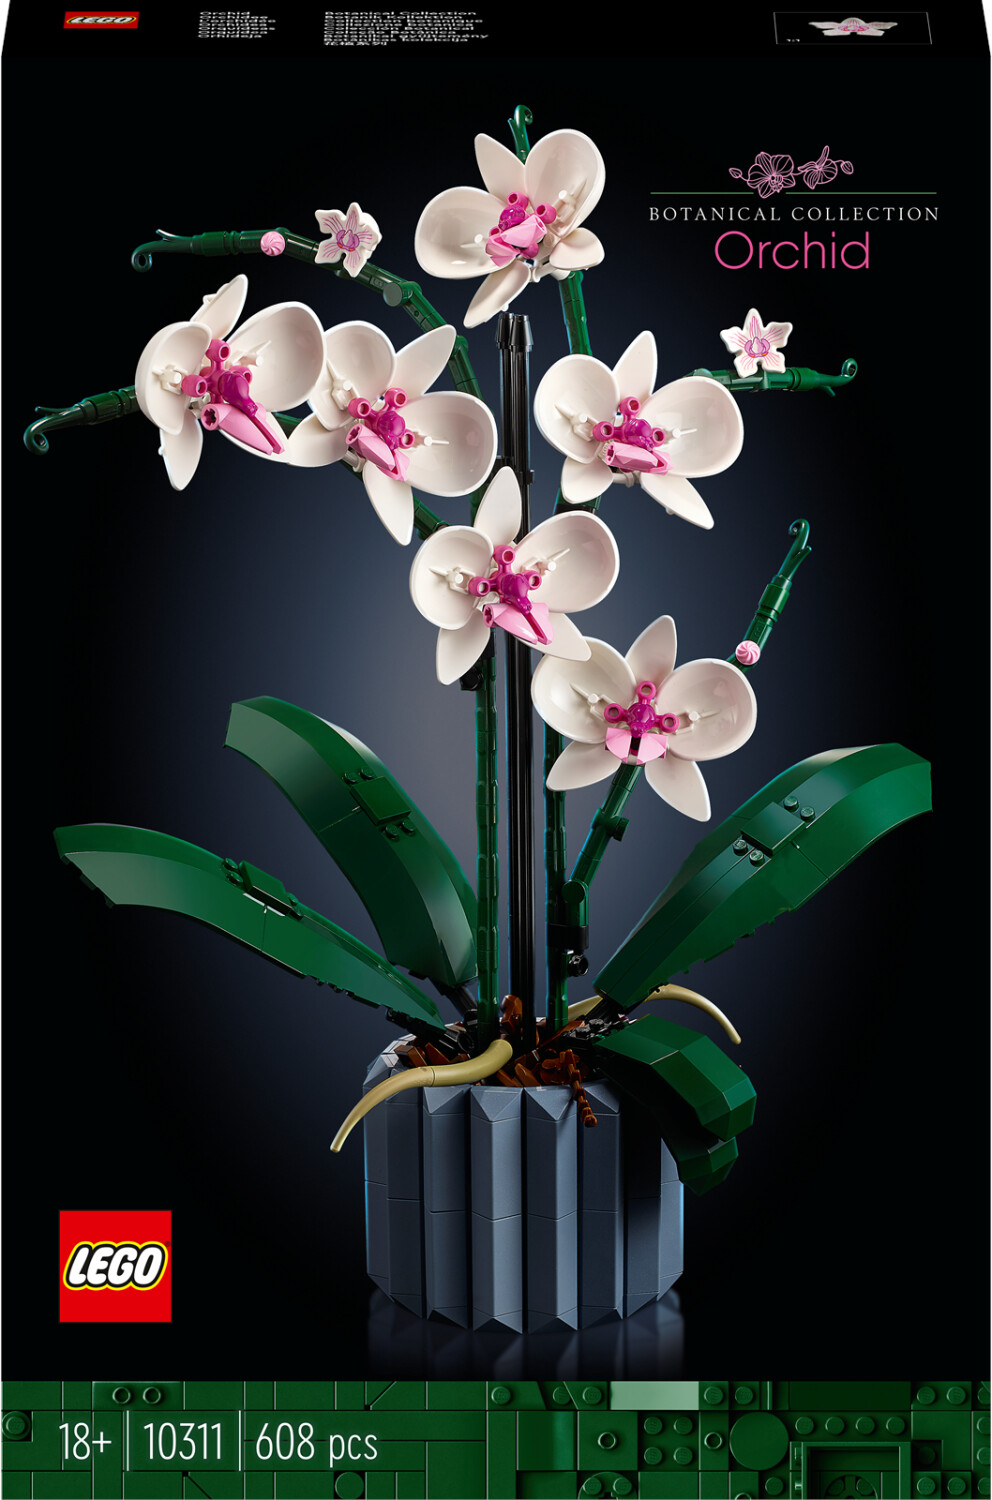 Bild zu Lego Creator Expert Botanical Collection Orchidee (10311) für 29,99€ (Vergleich: 37,51€)